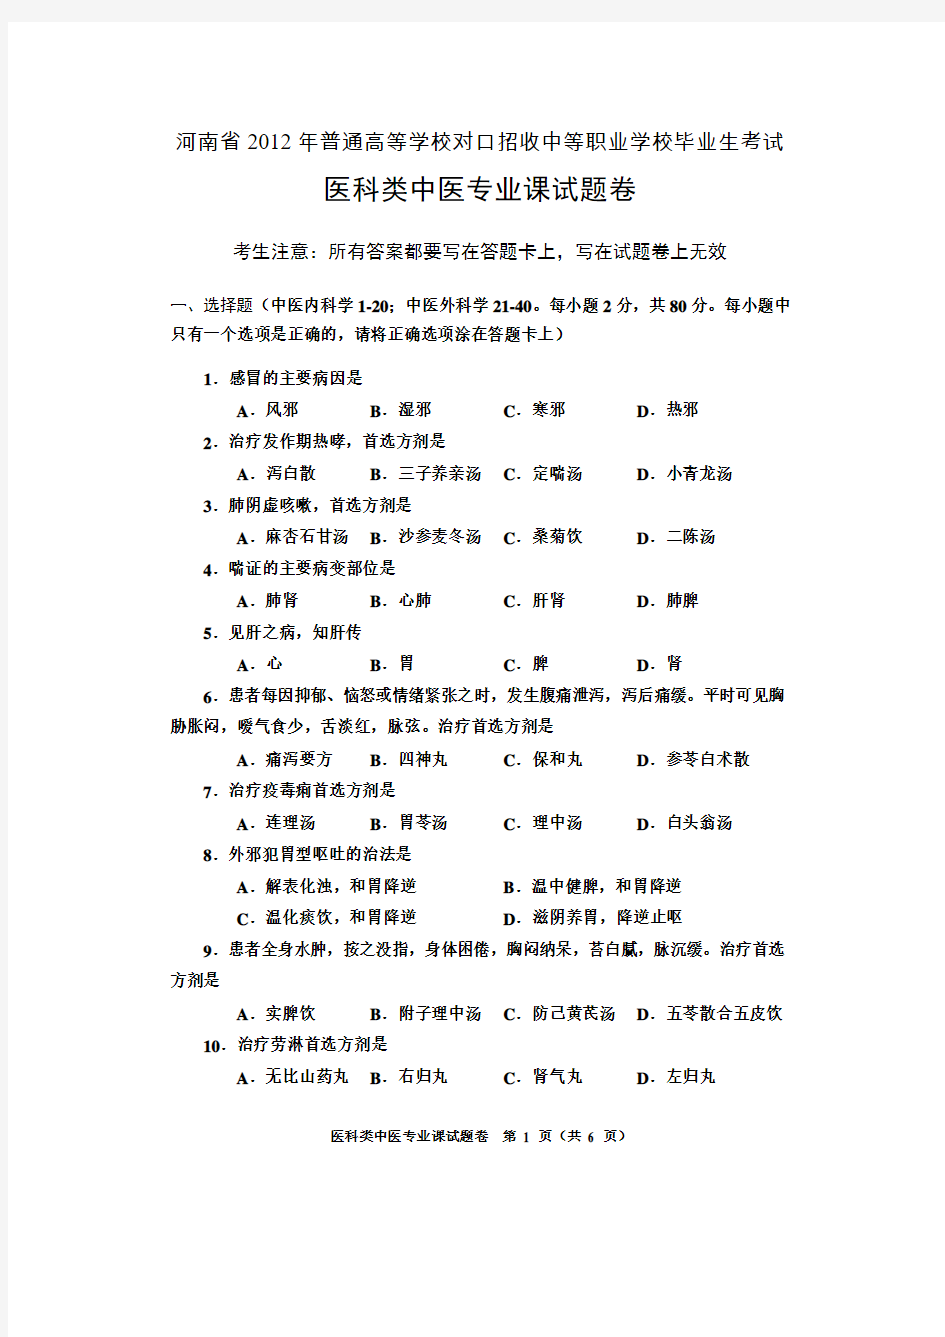 2009年河南普通高等学校对口招收中等职业学校毕业生考试